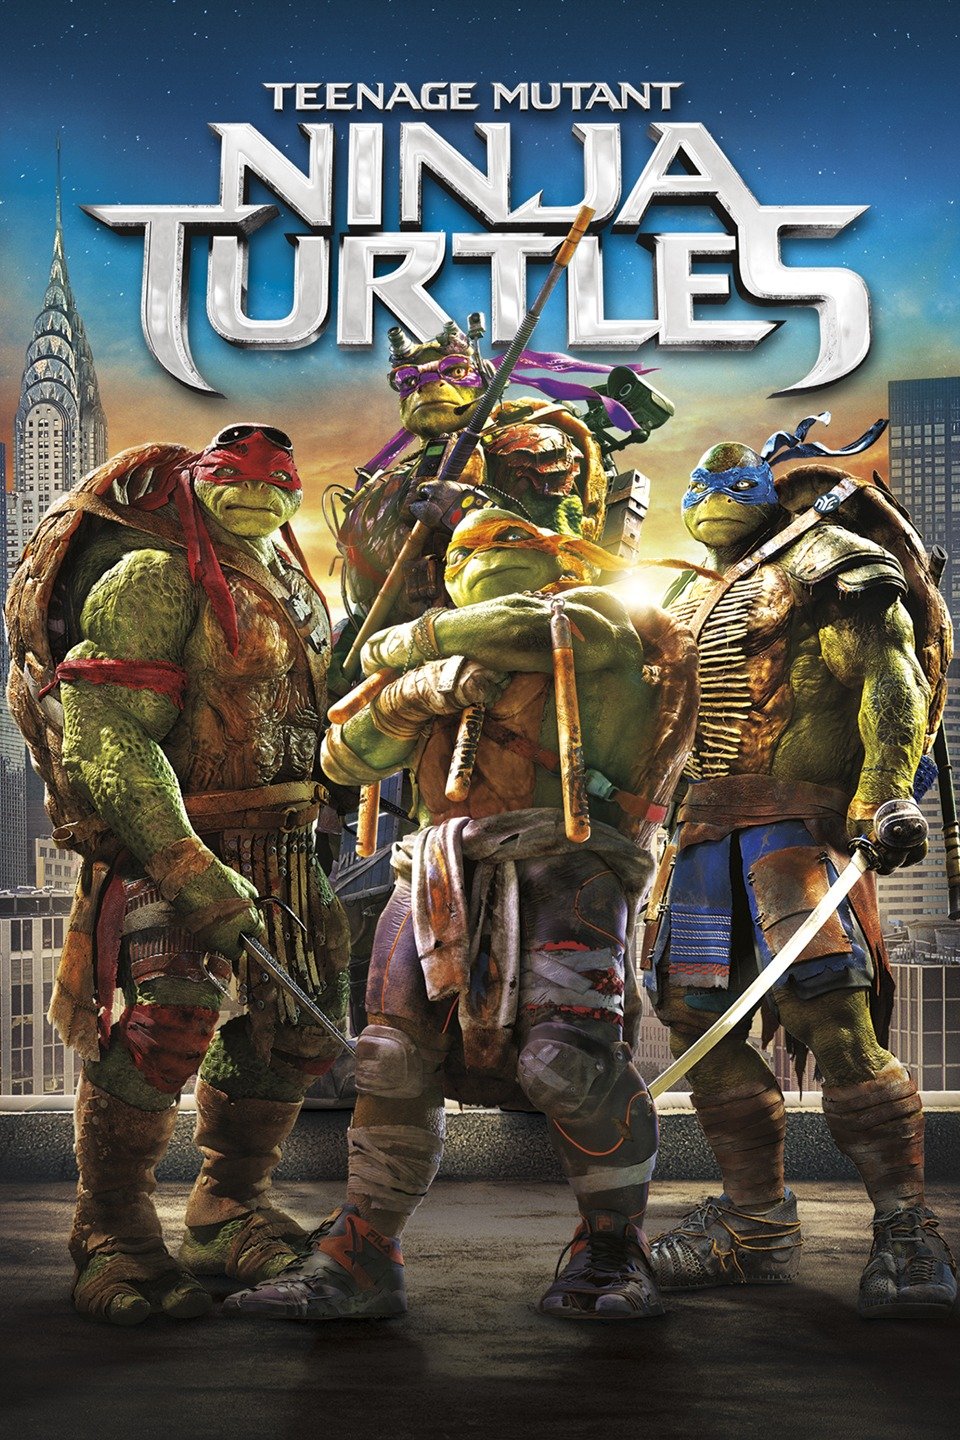 FFC: Teenage Mutant Ninja Turtles